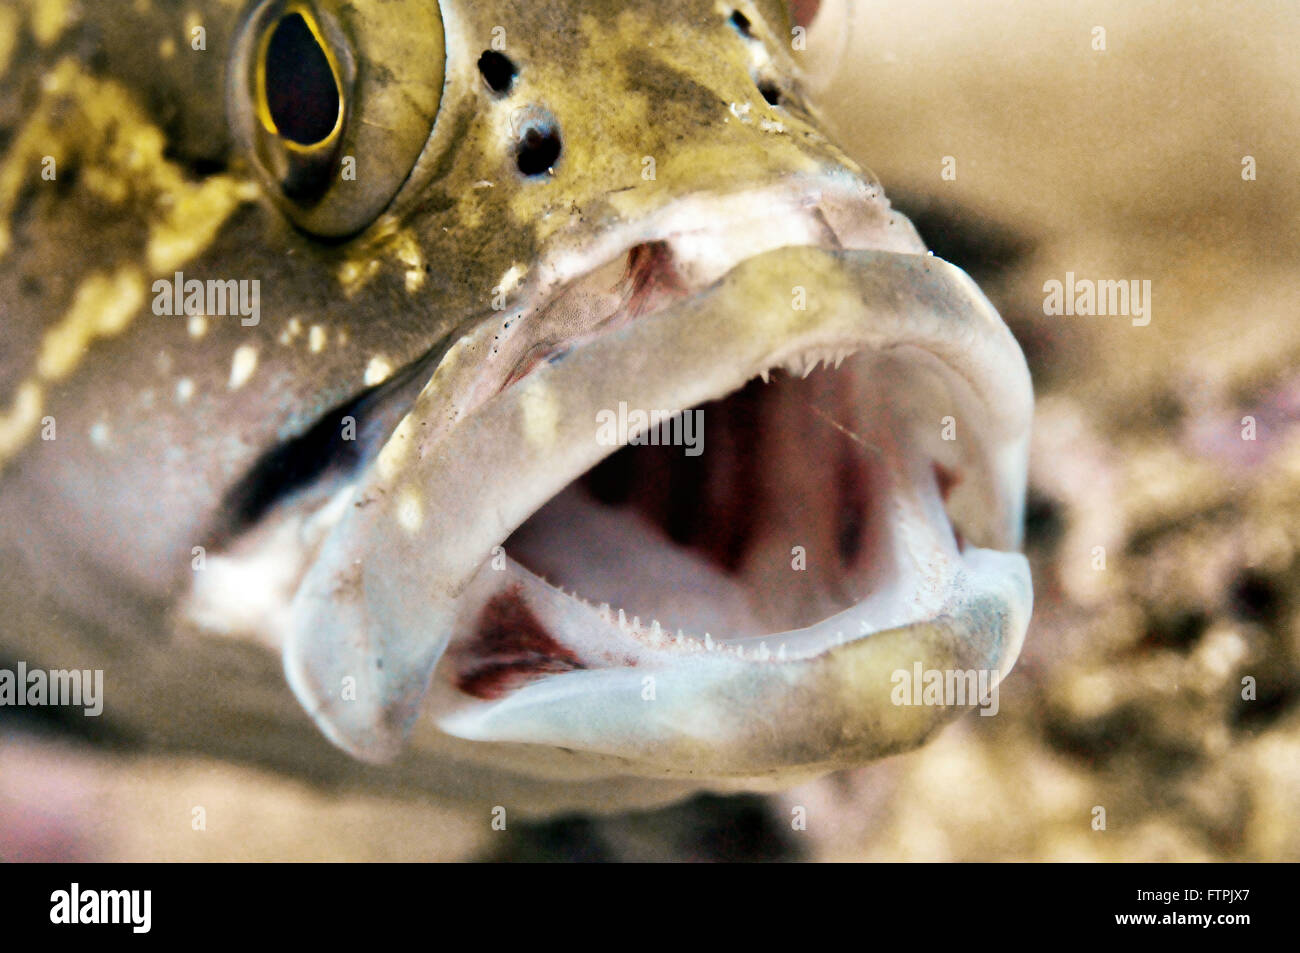 Unterwasser-Bilder auf die brasilianische Küste - Grouper - Marginata Mycteroperca Stockfoto